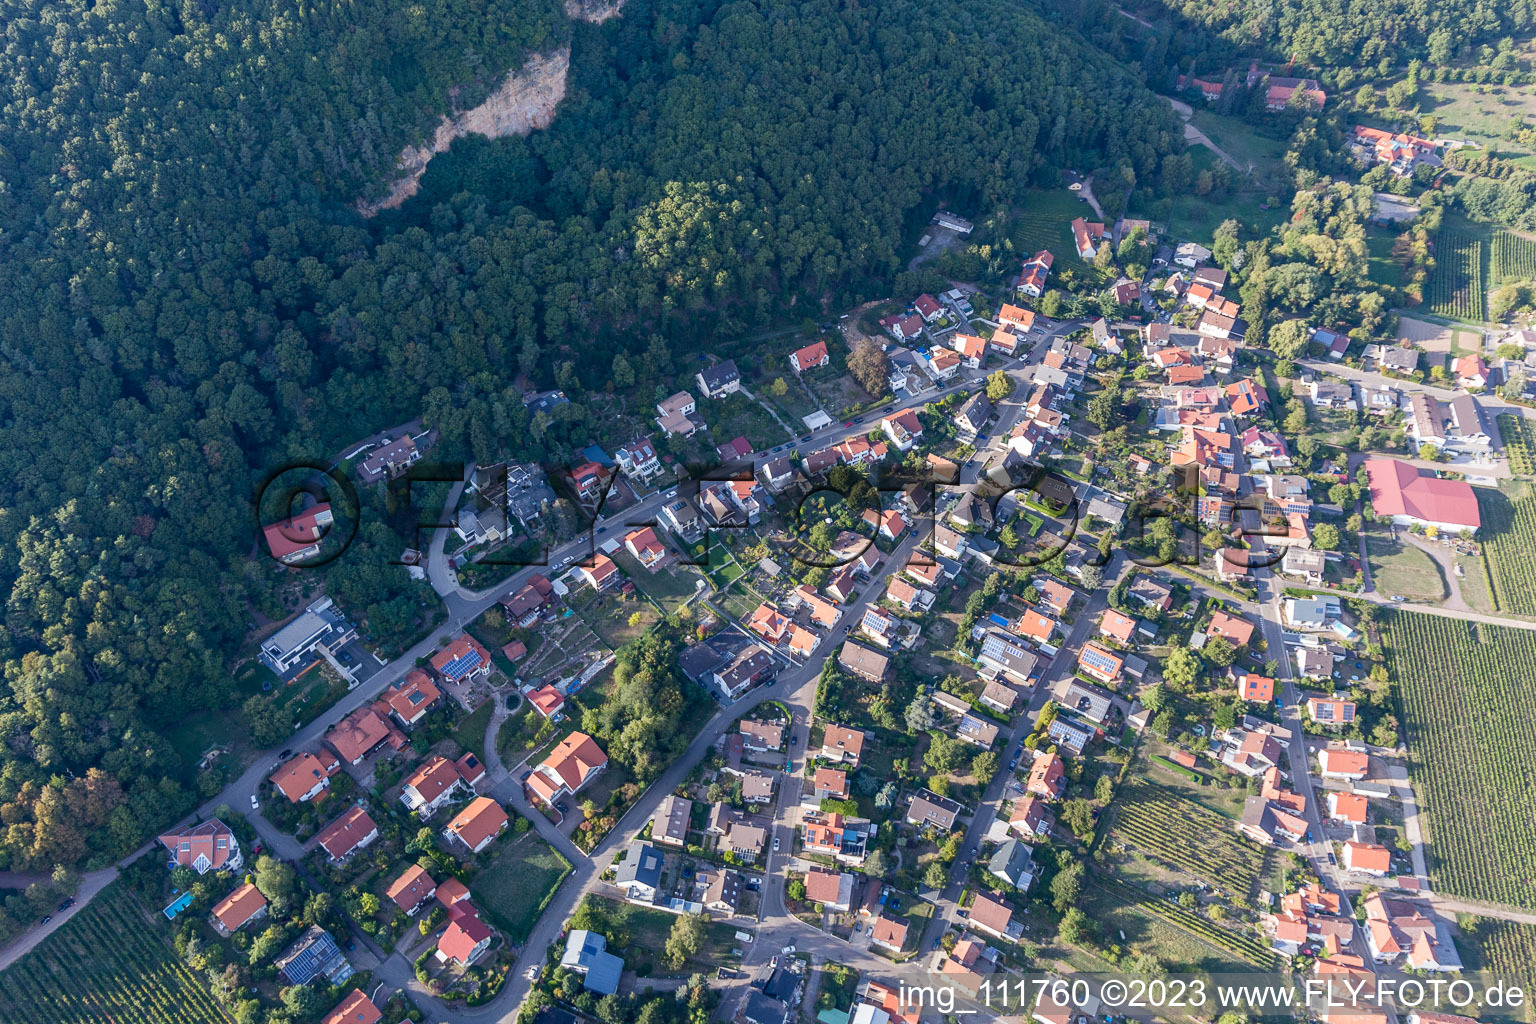 Frankweiler im Bundesland Rheinland-Pfalz, Deutschland aus der Luft betrachtet